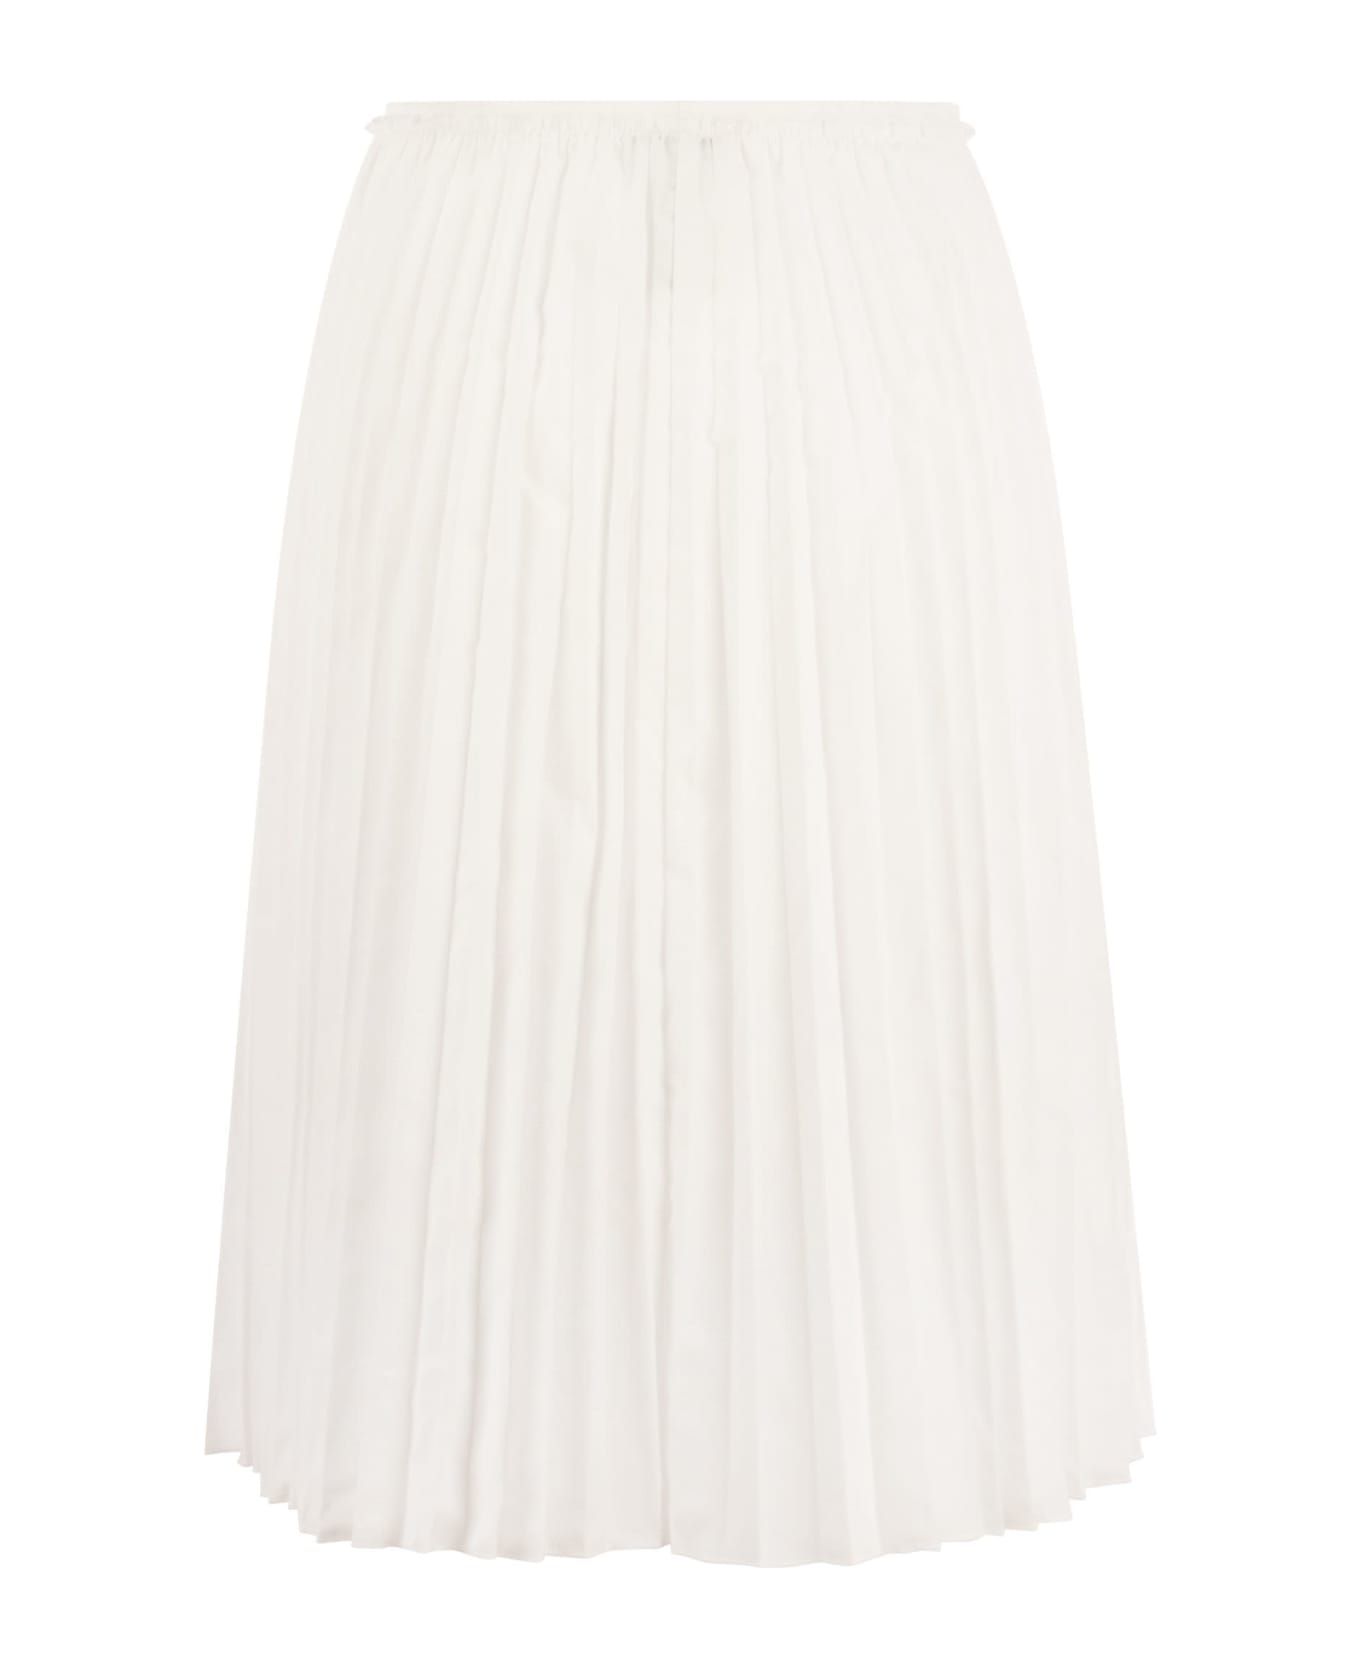 RED Valentino Pleated Taffeta Skirt - White